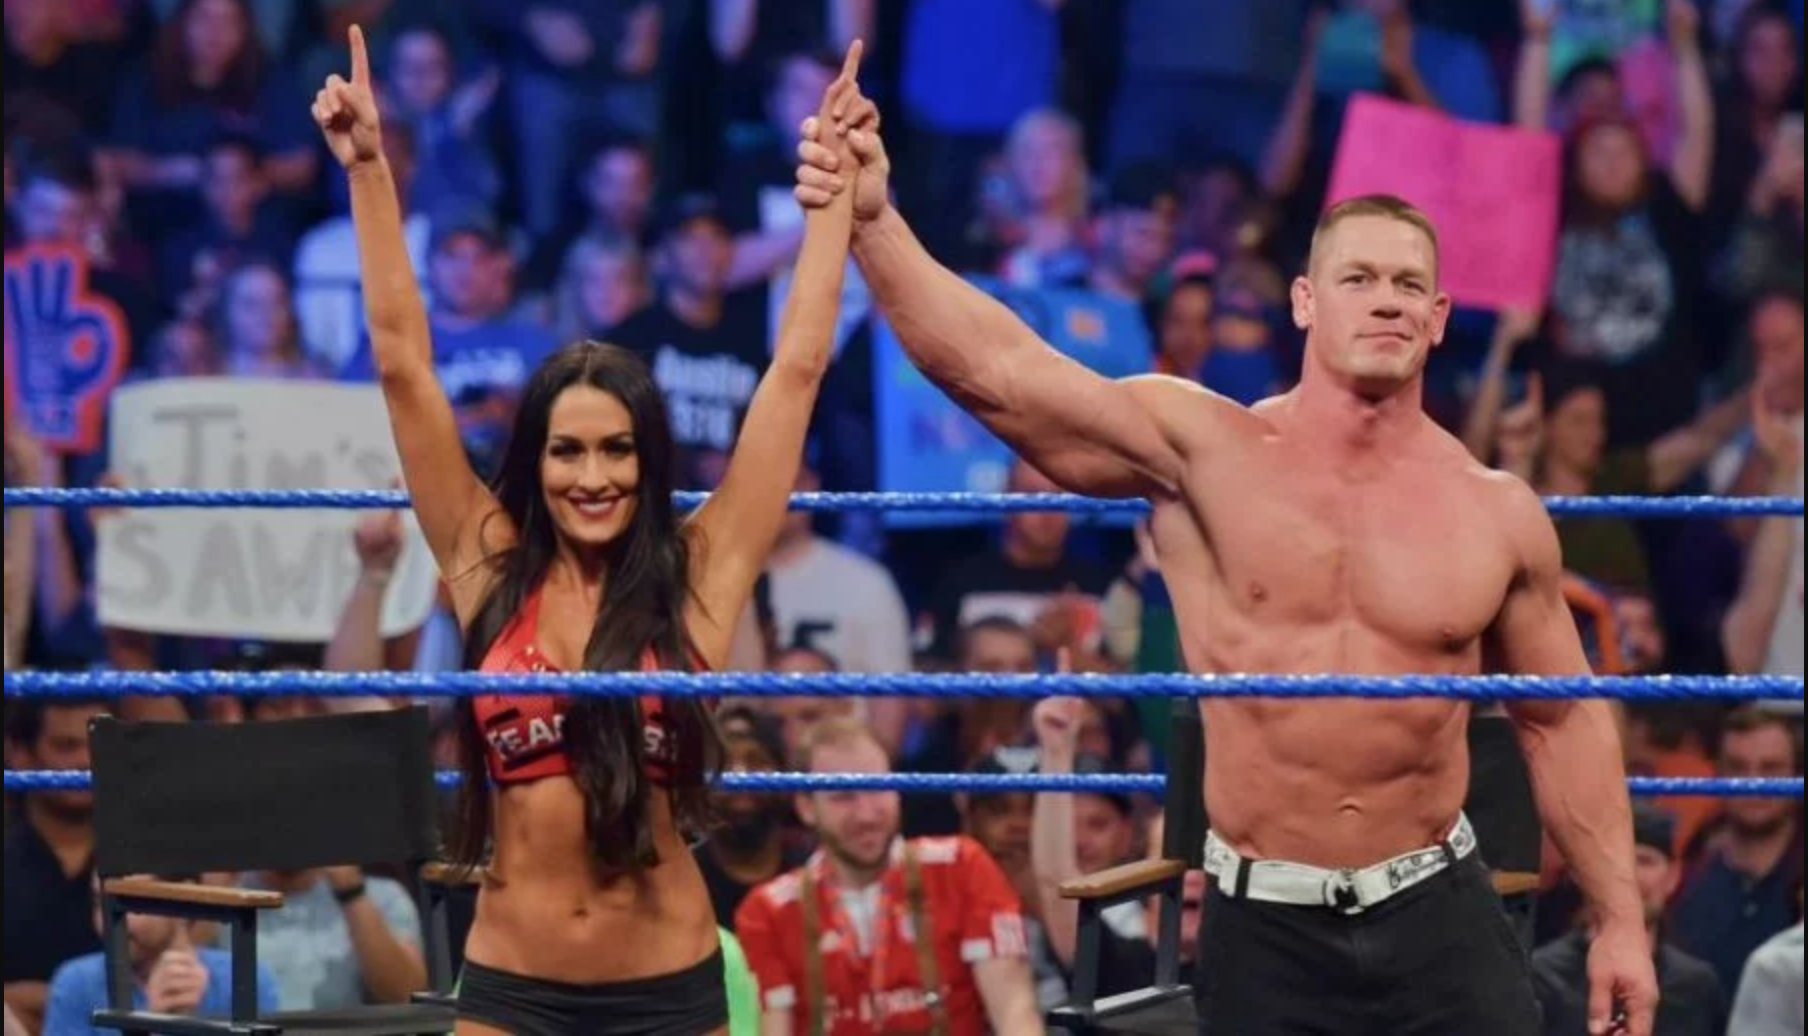 John Cena and Nikki Bella split